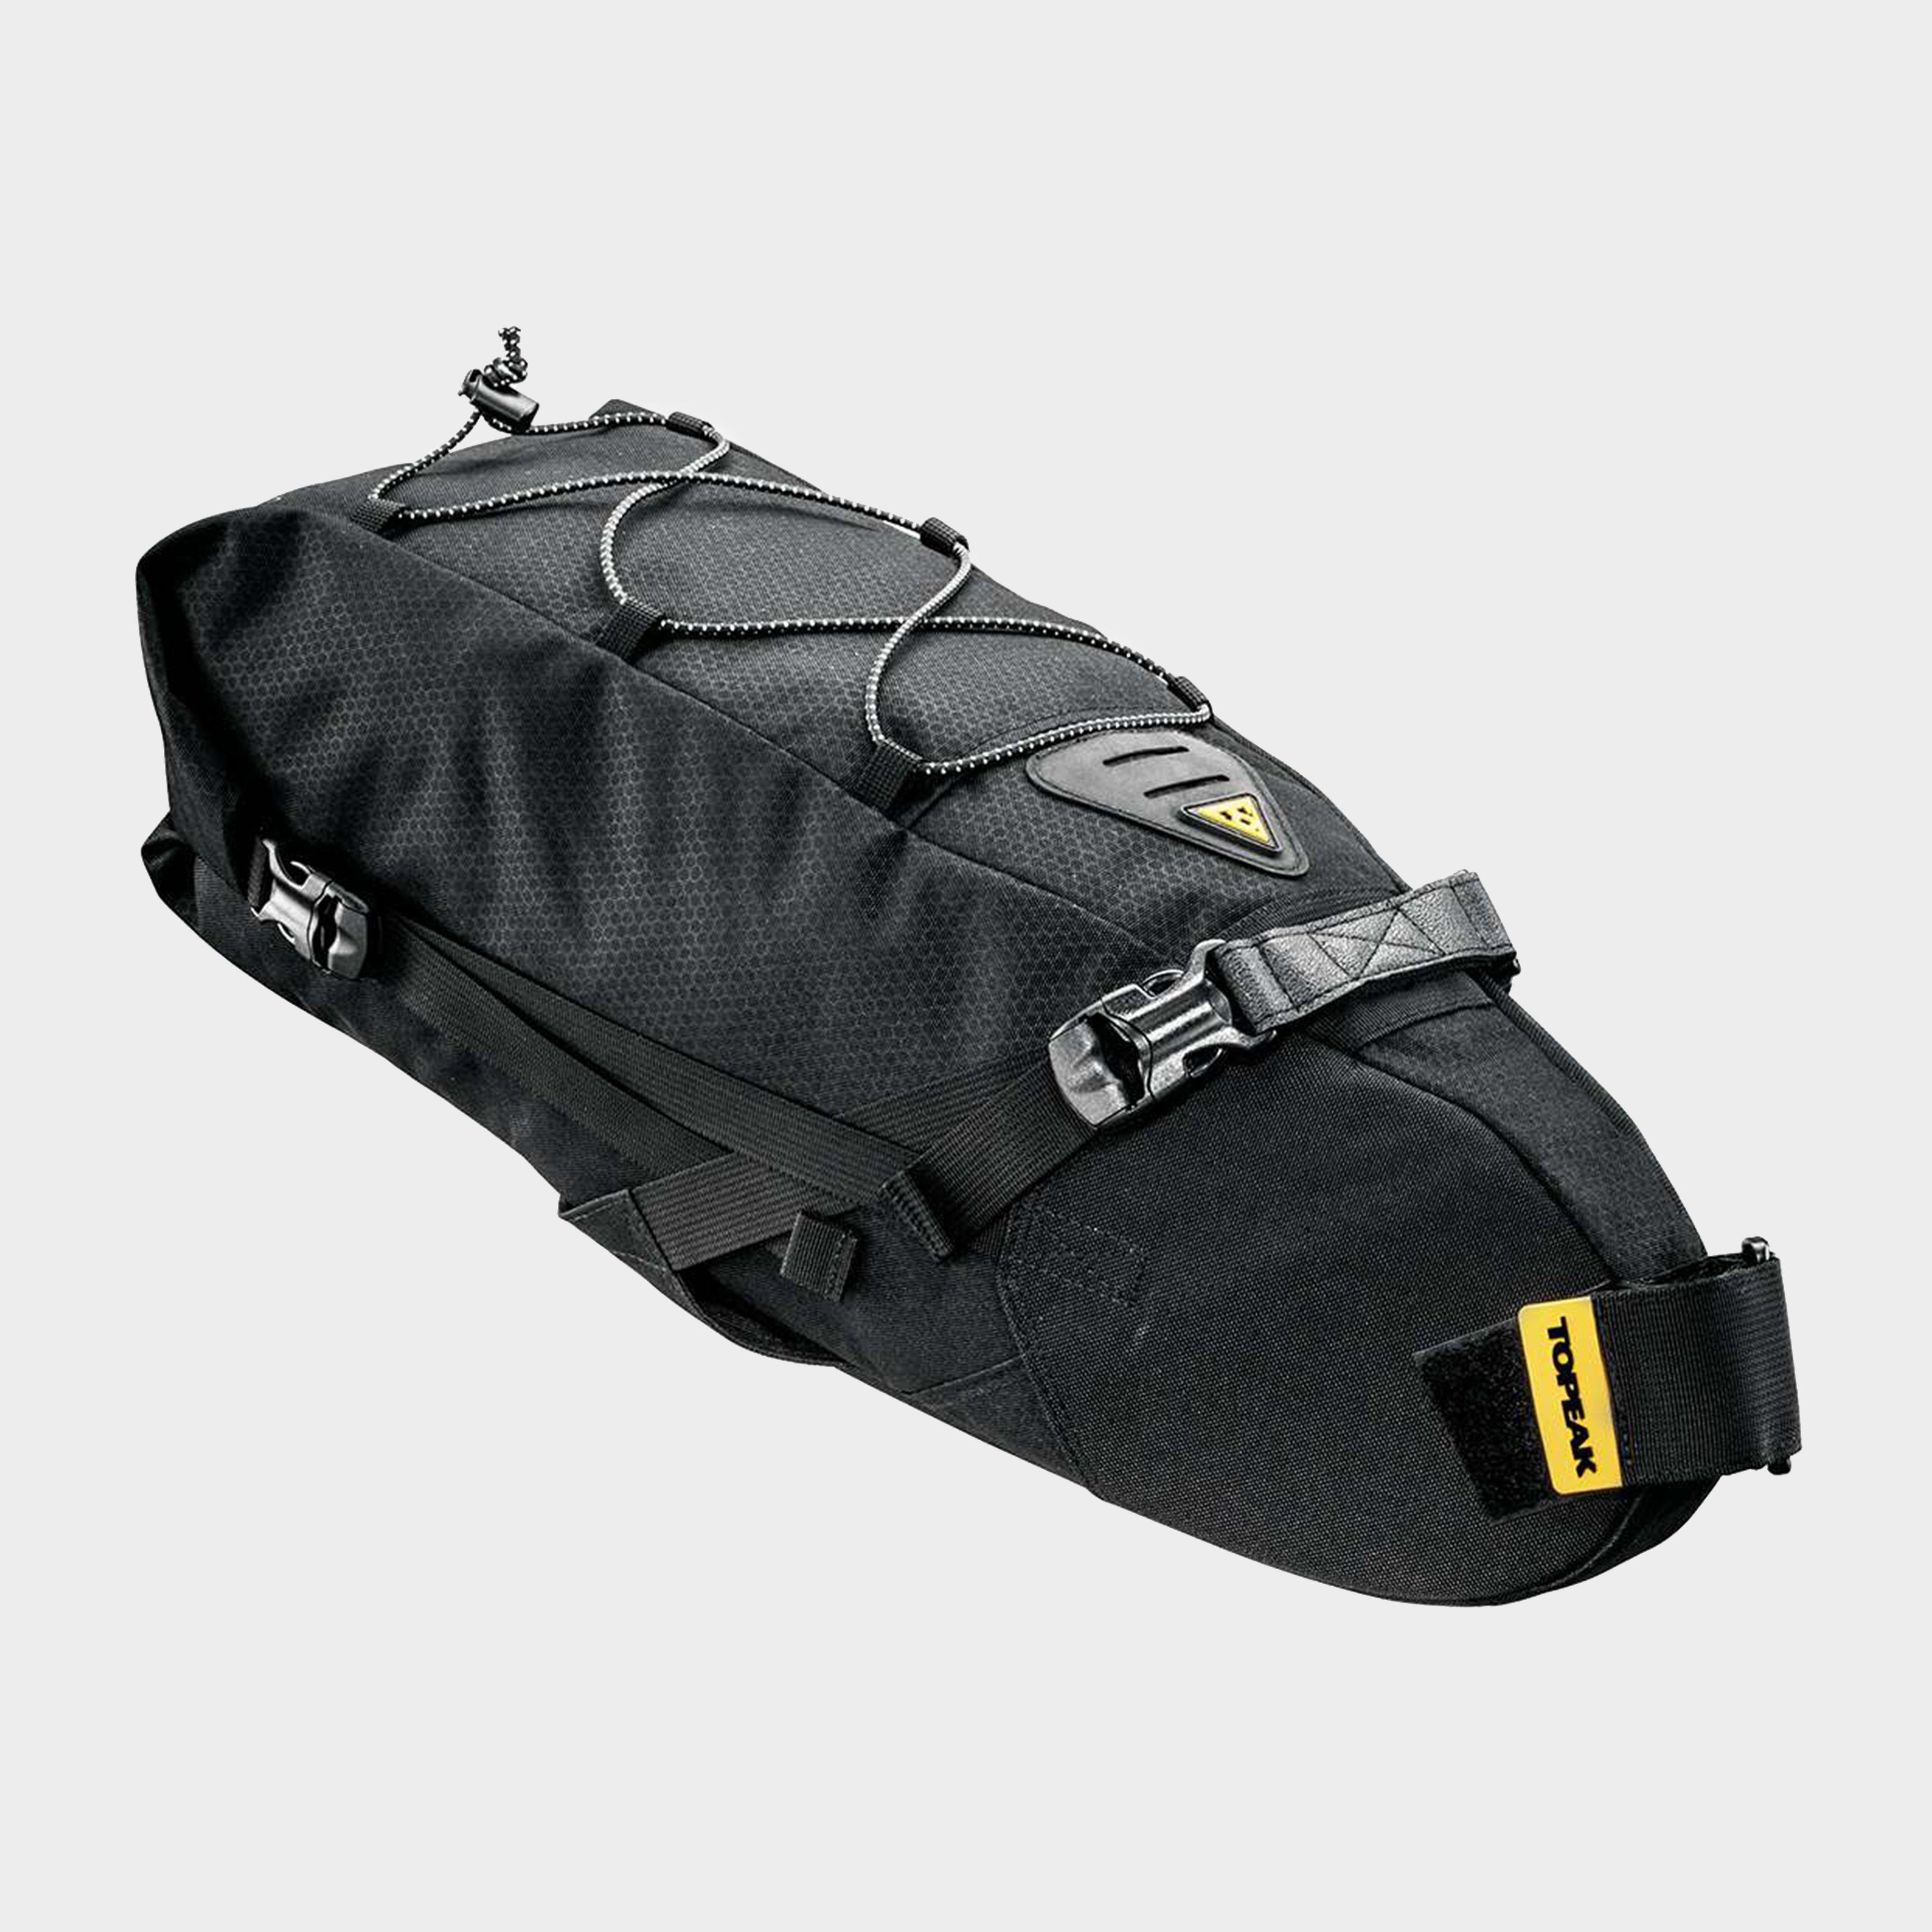 TOPEAK Topeak Backloader Bag 10L - Black, Black